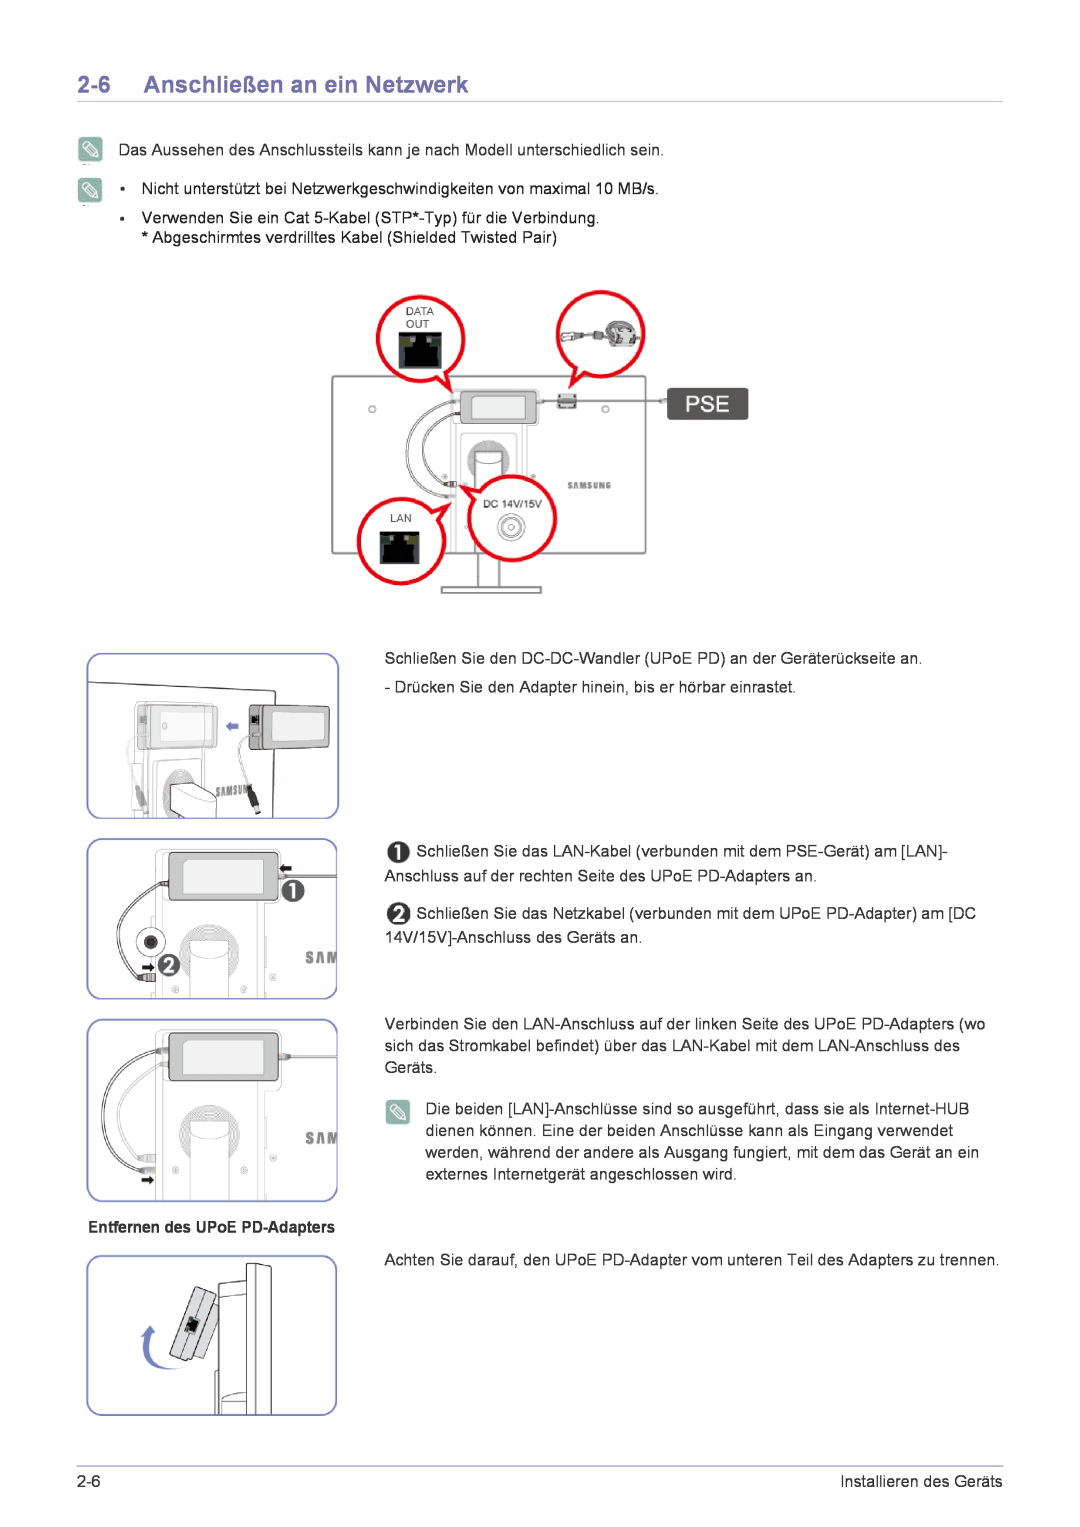 Samsung LF22NPBHBNP/EN manual Anschließen an ein Netzwerk, Entfernen des UPoE PD-Adapters 